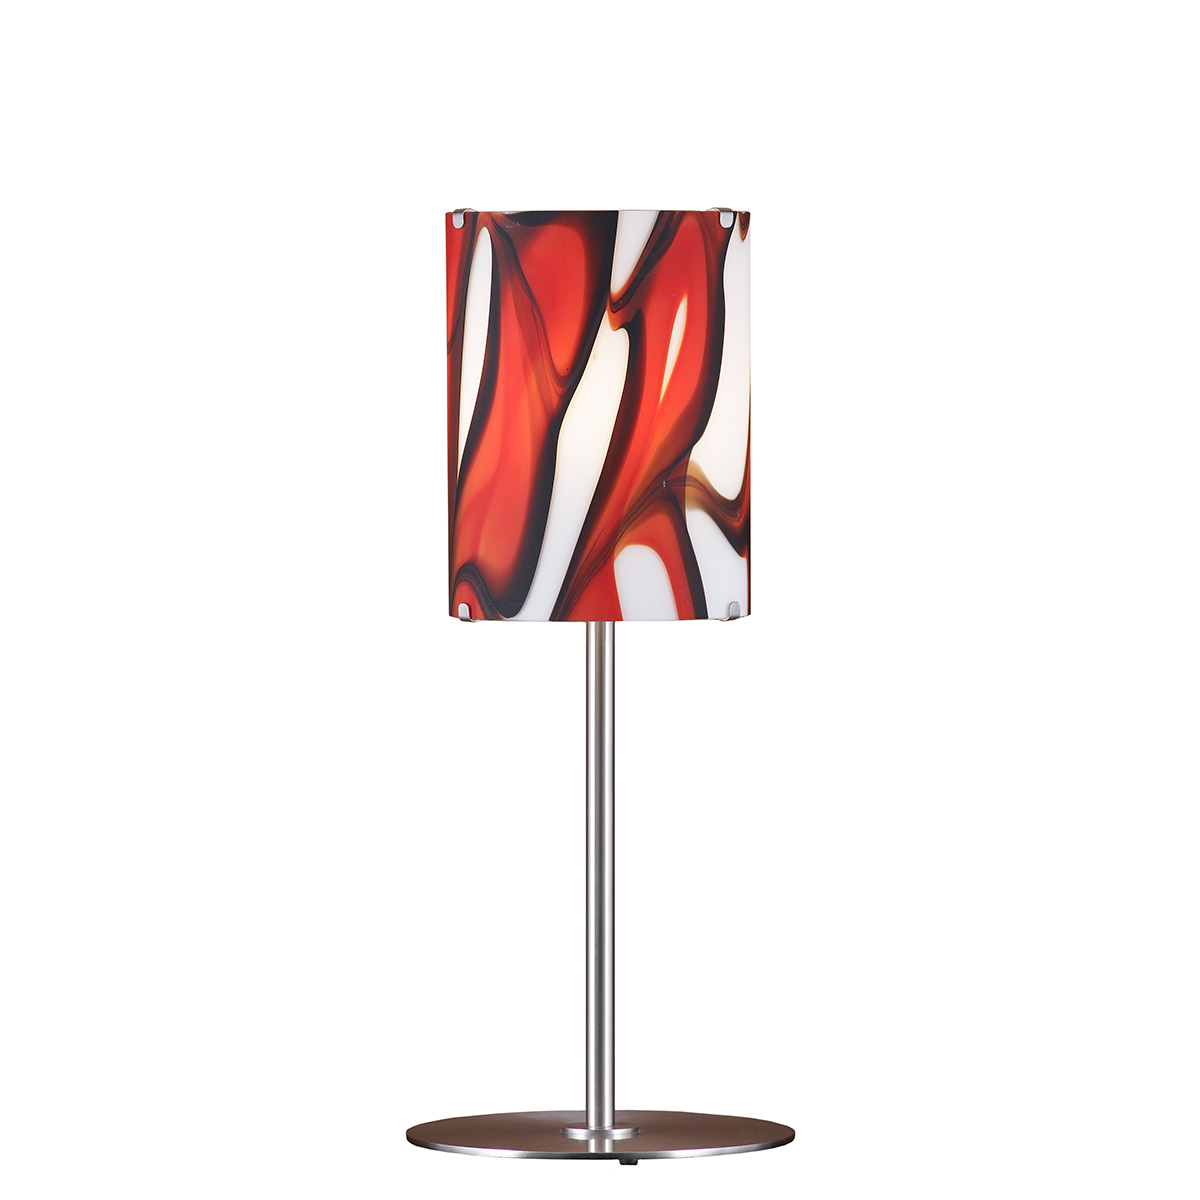 Μοντέρνα επιτραπέζια λάμπα COLORE modern Murano lamp